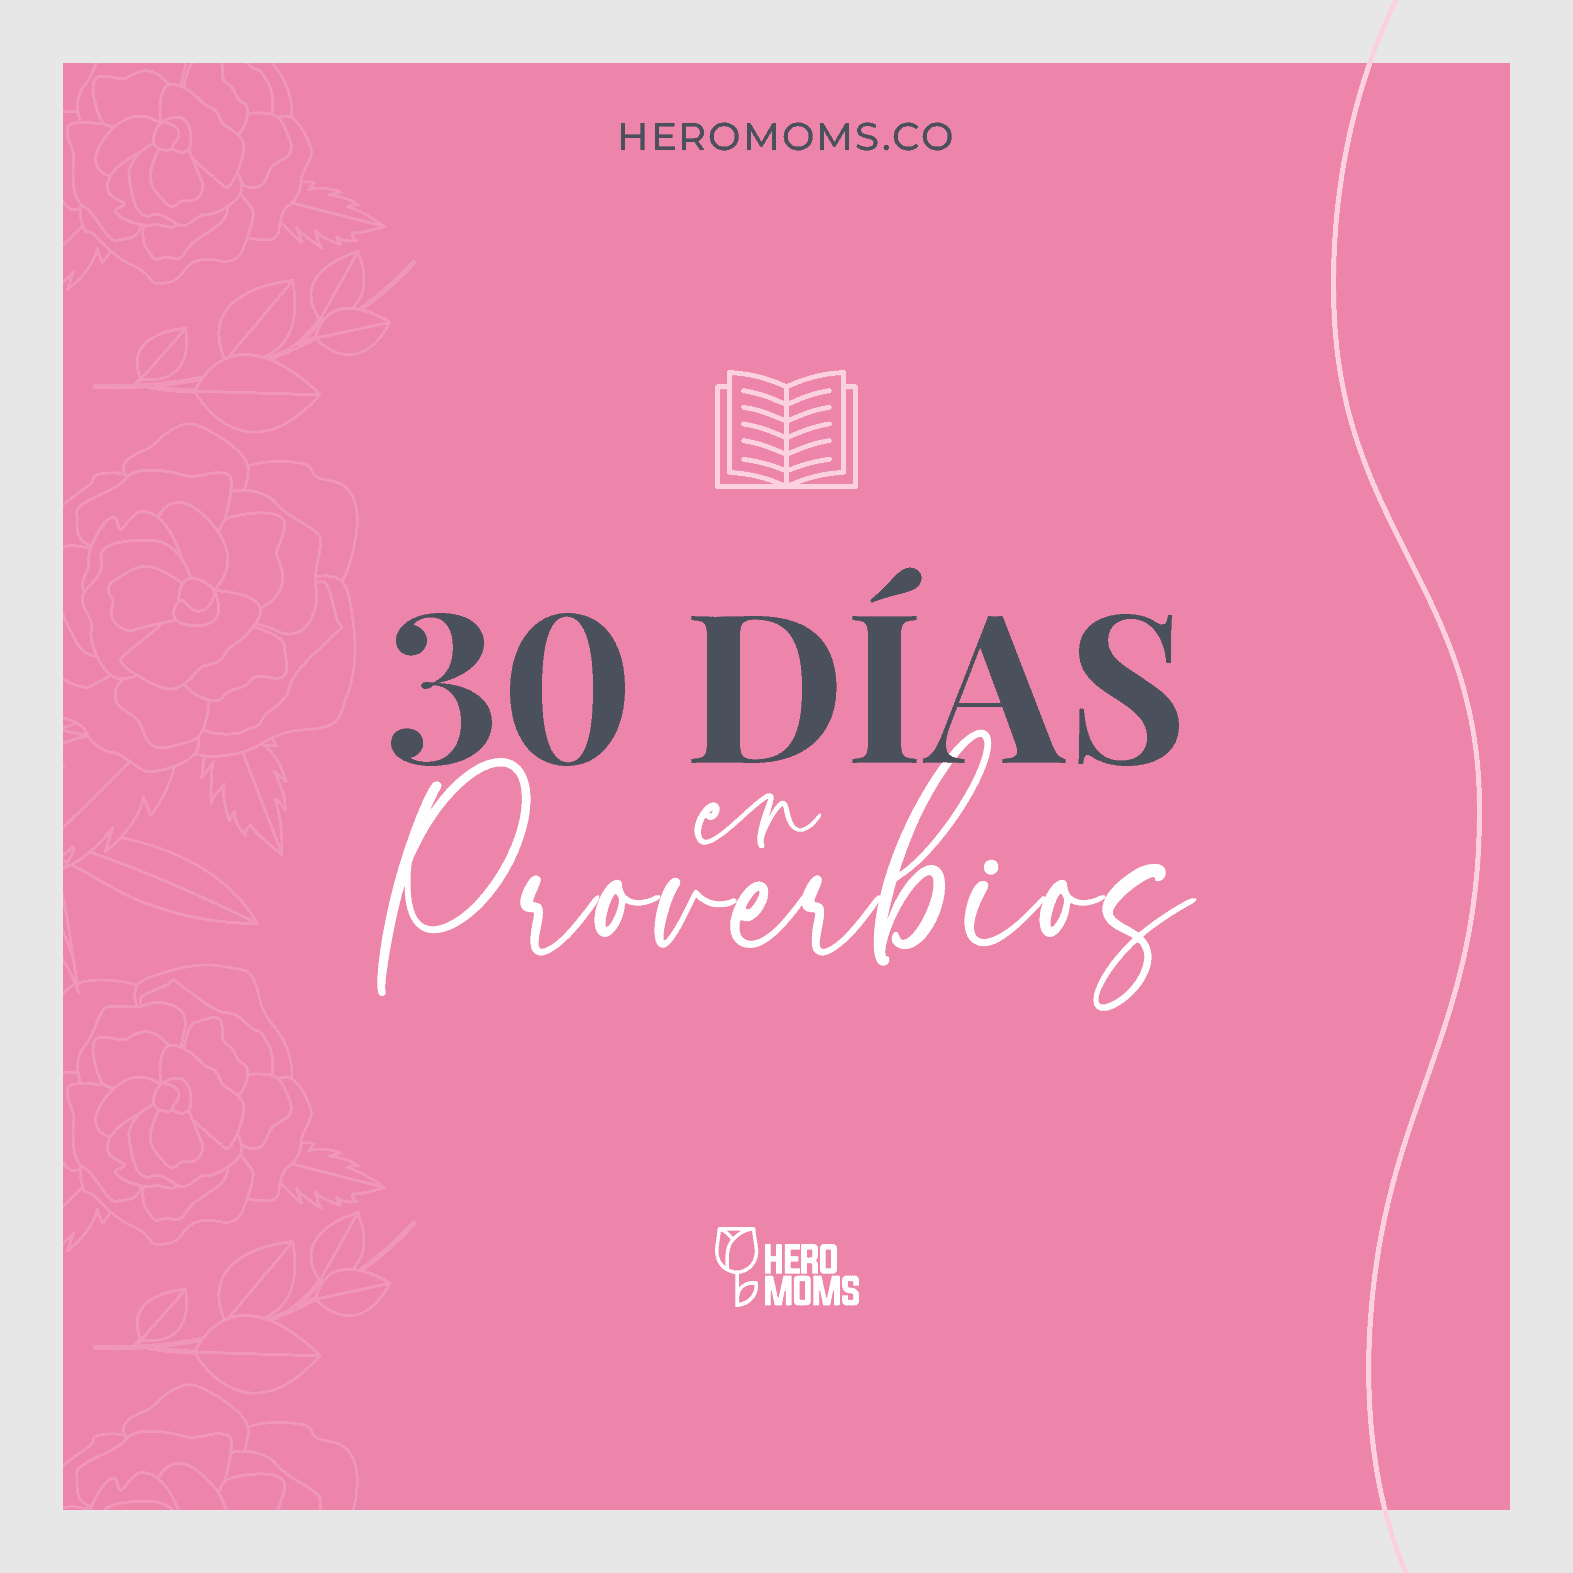 30 dias en proverbios